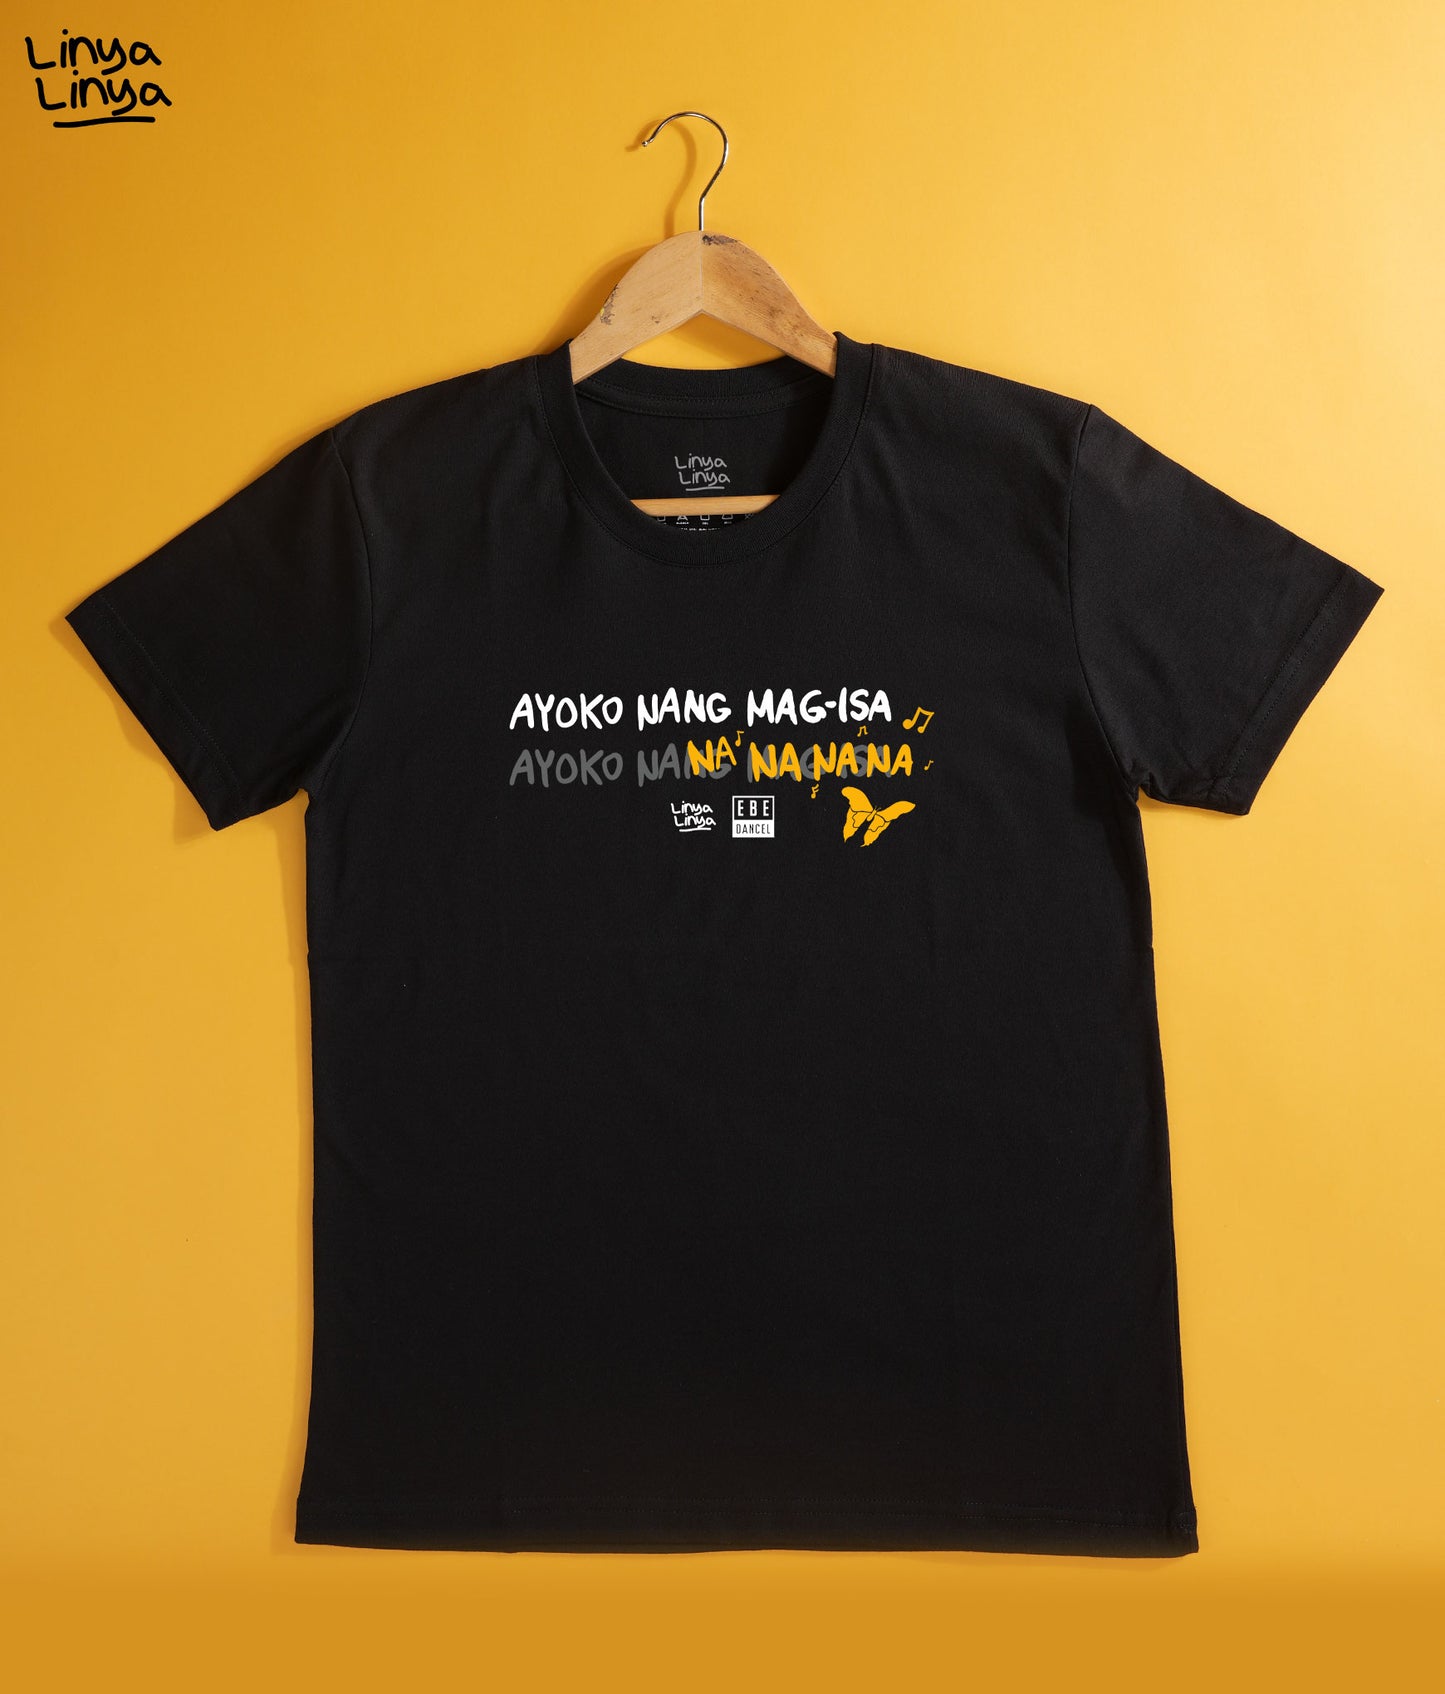 Linya-Linya x Ebe Dancel Limited Edition MARIPOSA Shirt: Ayoko Nang Mag-Isa